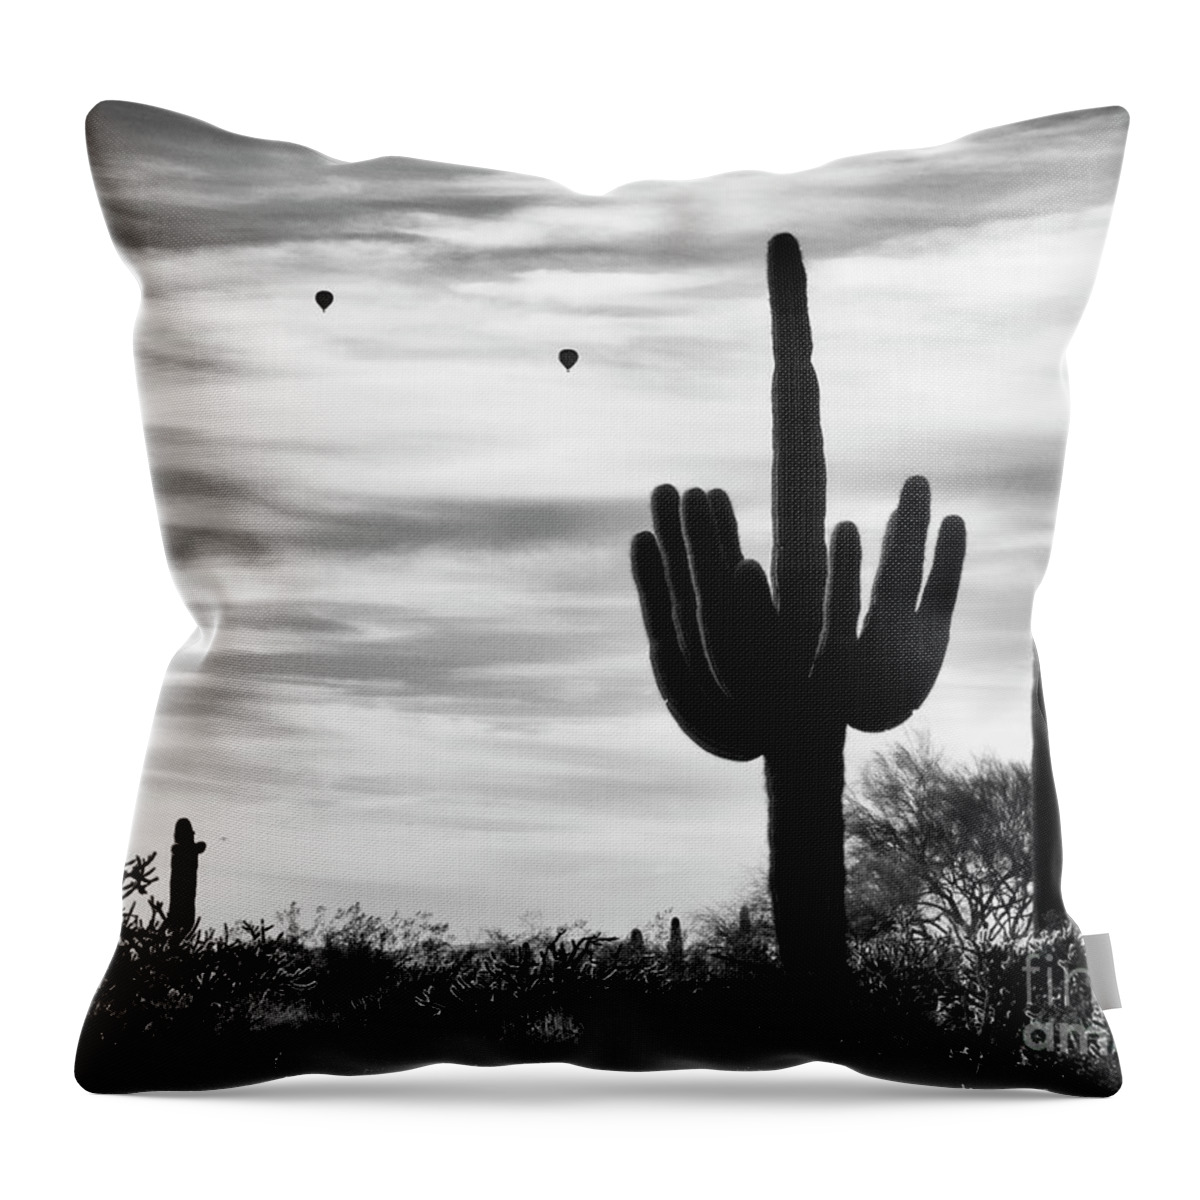 Saguaro Cactus Throw Pillow featuring the photograph Saguaro Cactus with Hot Air Balloons by Tamara Becker